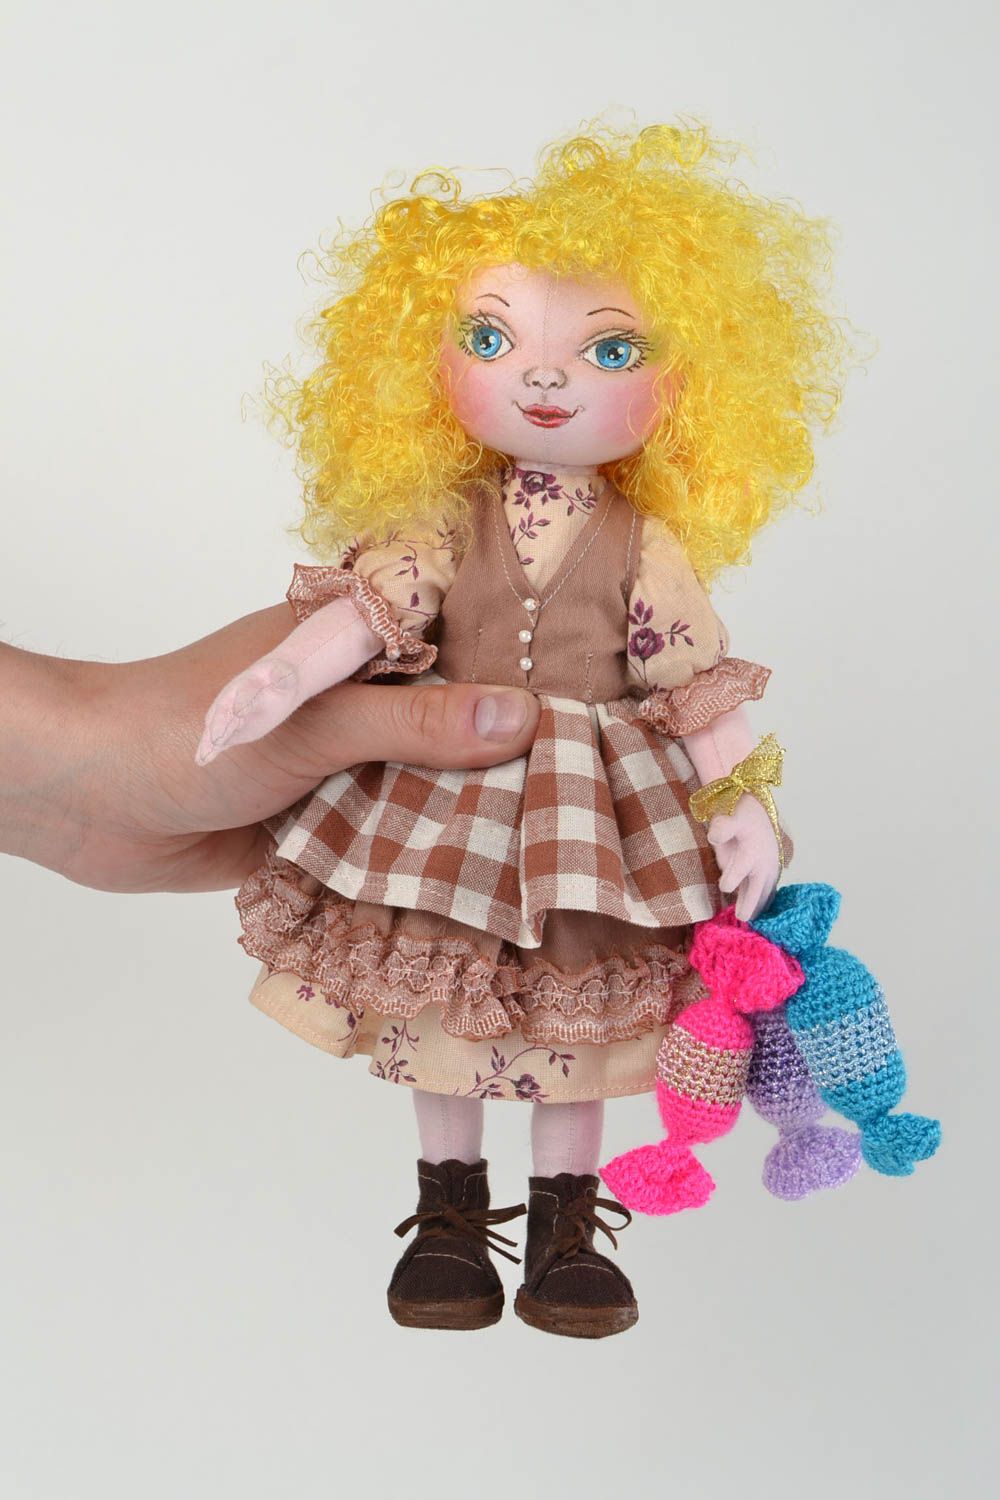 Кукла для интерьера и детей тканевая мягкая игрушка ручной работы Сладкоежка фото 1